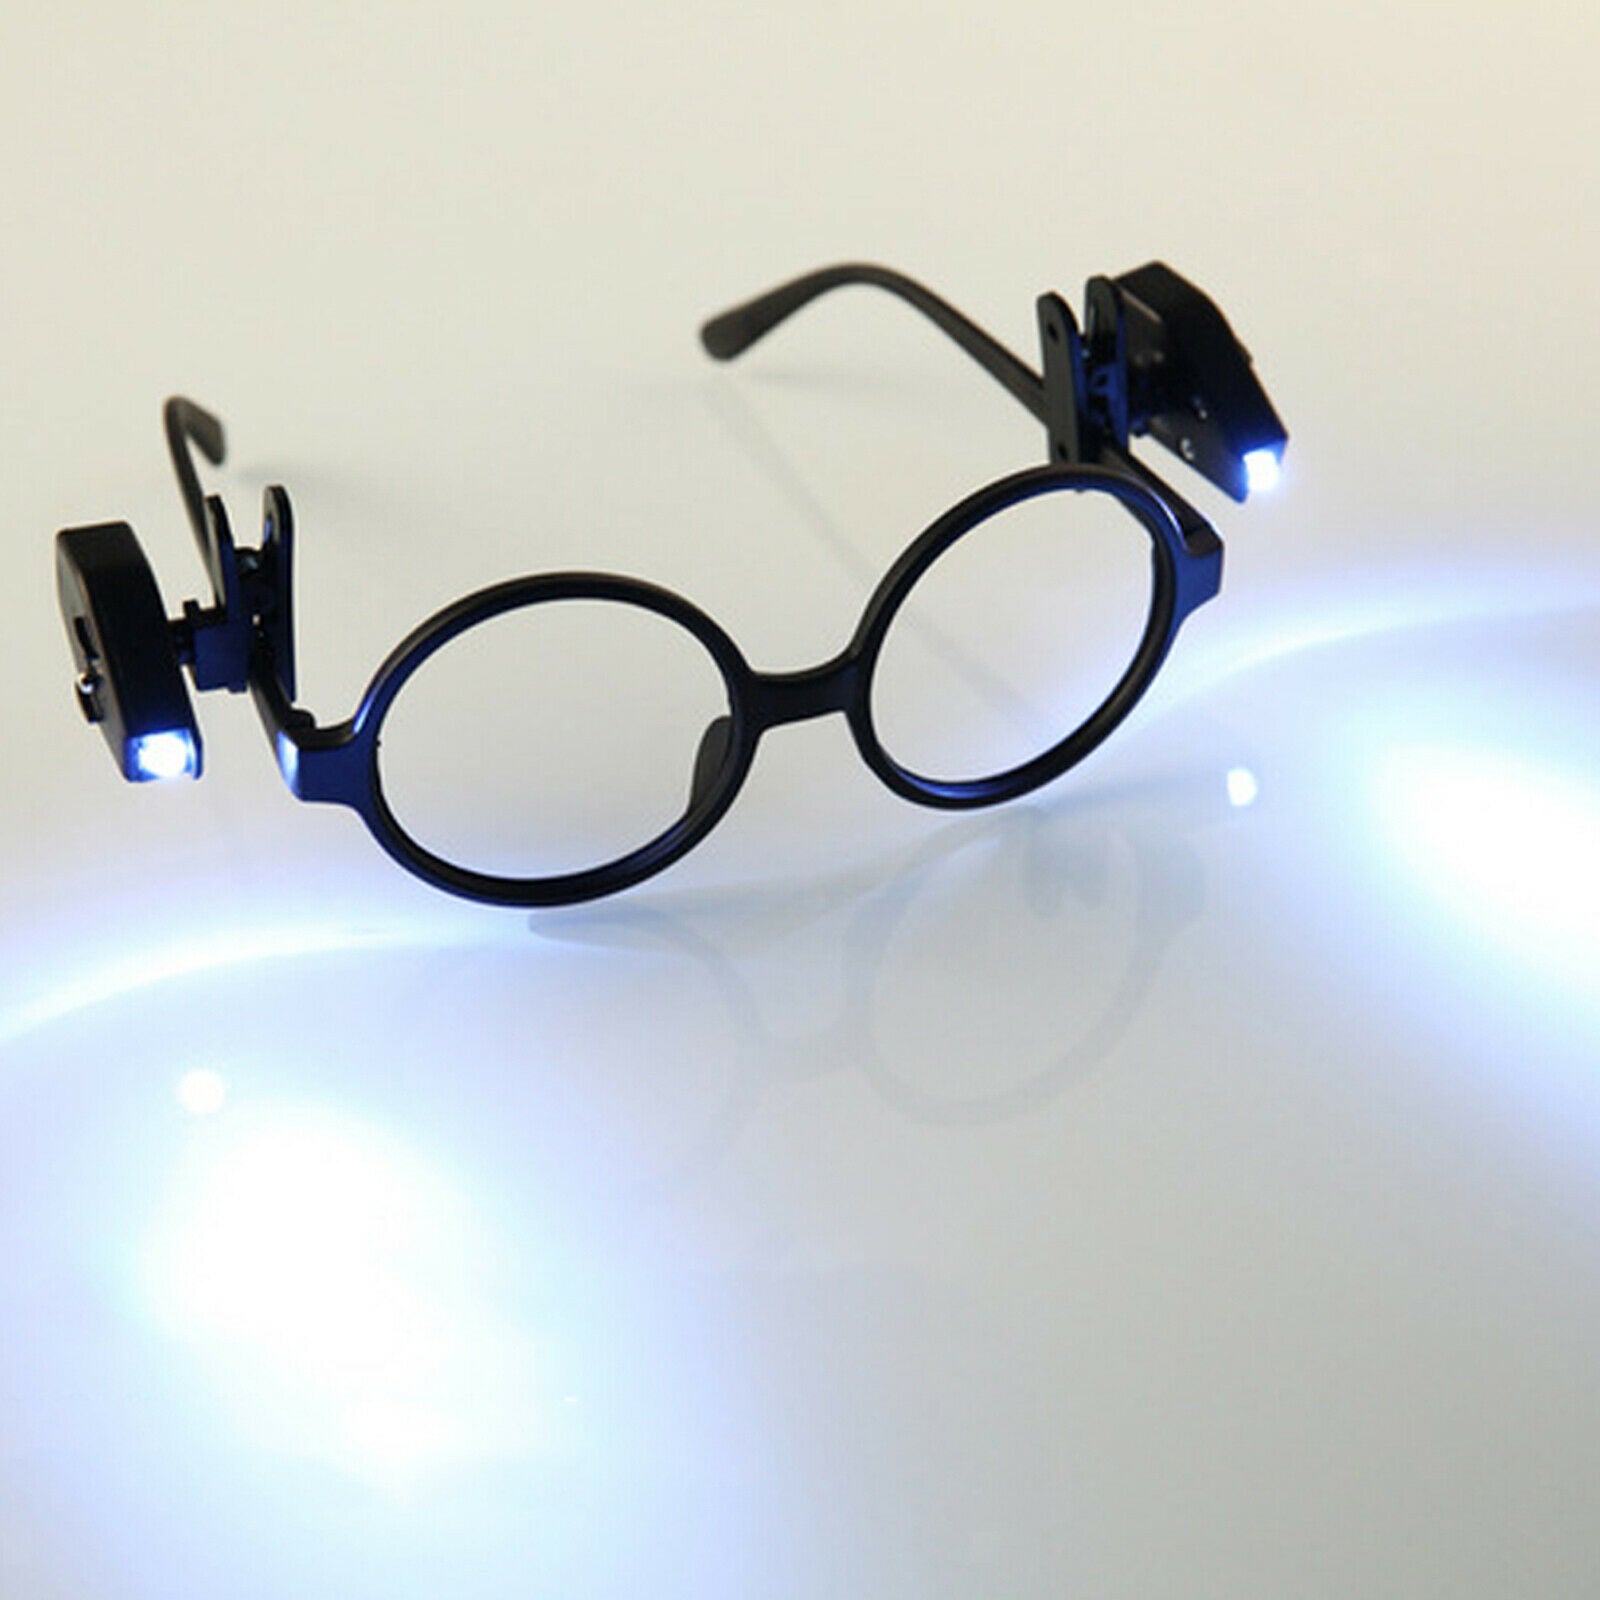 1Pcs Eyeglass Reading Light Glasses Flashlight LED Light Clip On Eye Glasses